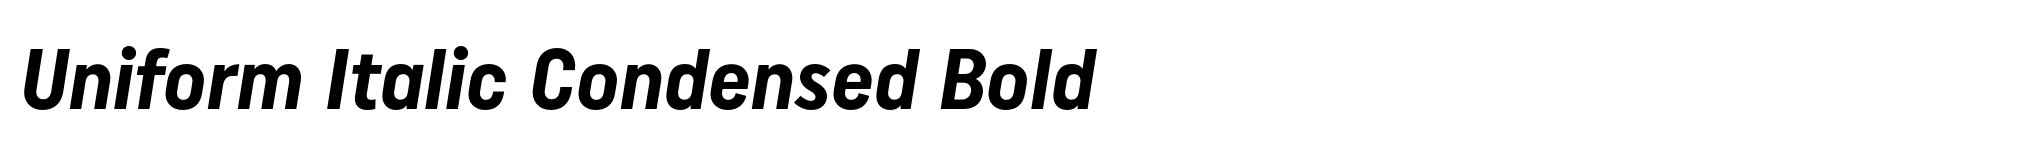 Uniform Italic Condensed Bold image